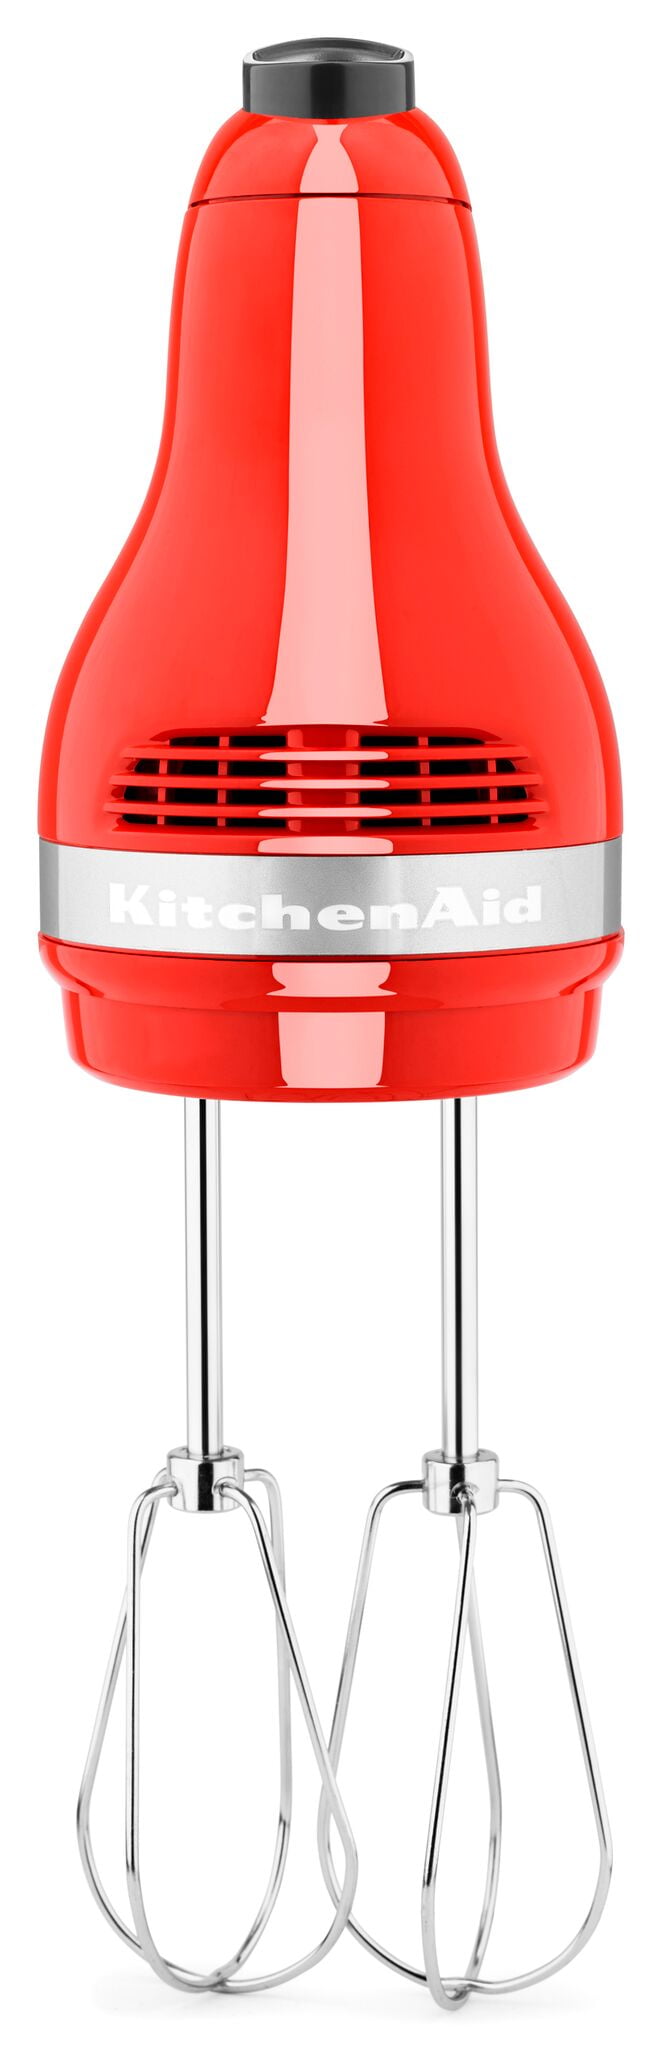 KitchenAid KHM5TB Classic Plus 5 Hand Mixer for sale online